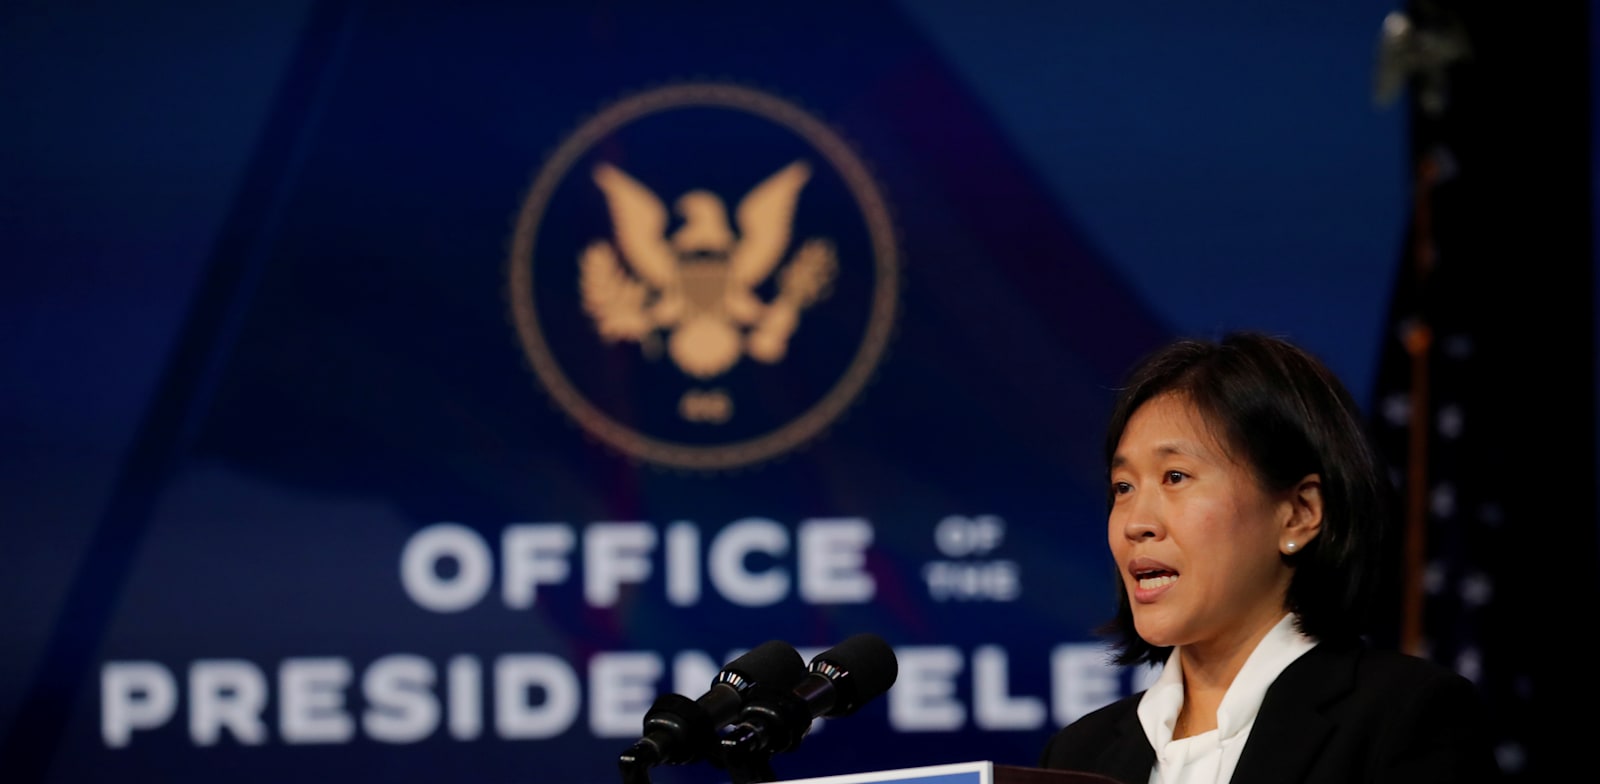 קתרין טאי, המועמדת של ביידן לנציגת הסחר של ארה"ב / צילום: Reuters, Mike Segar